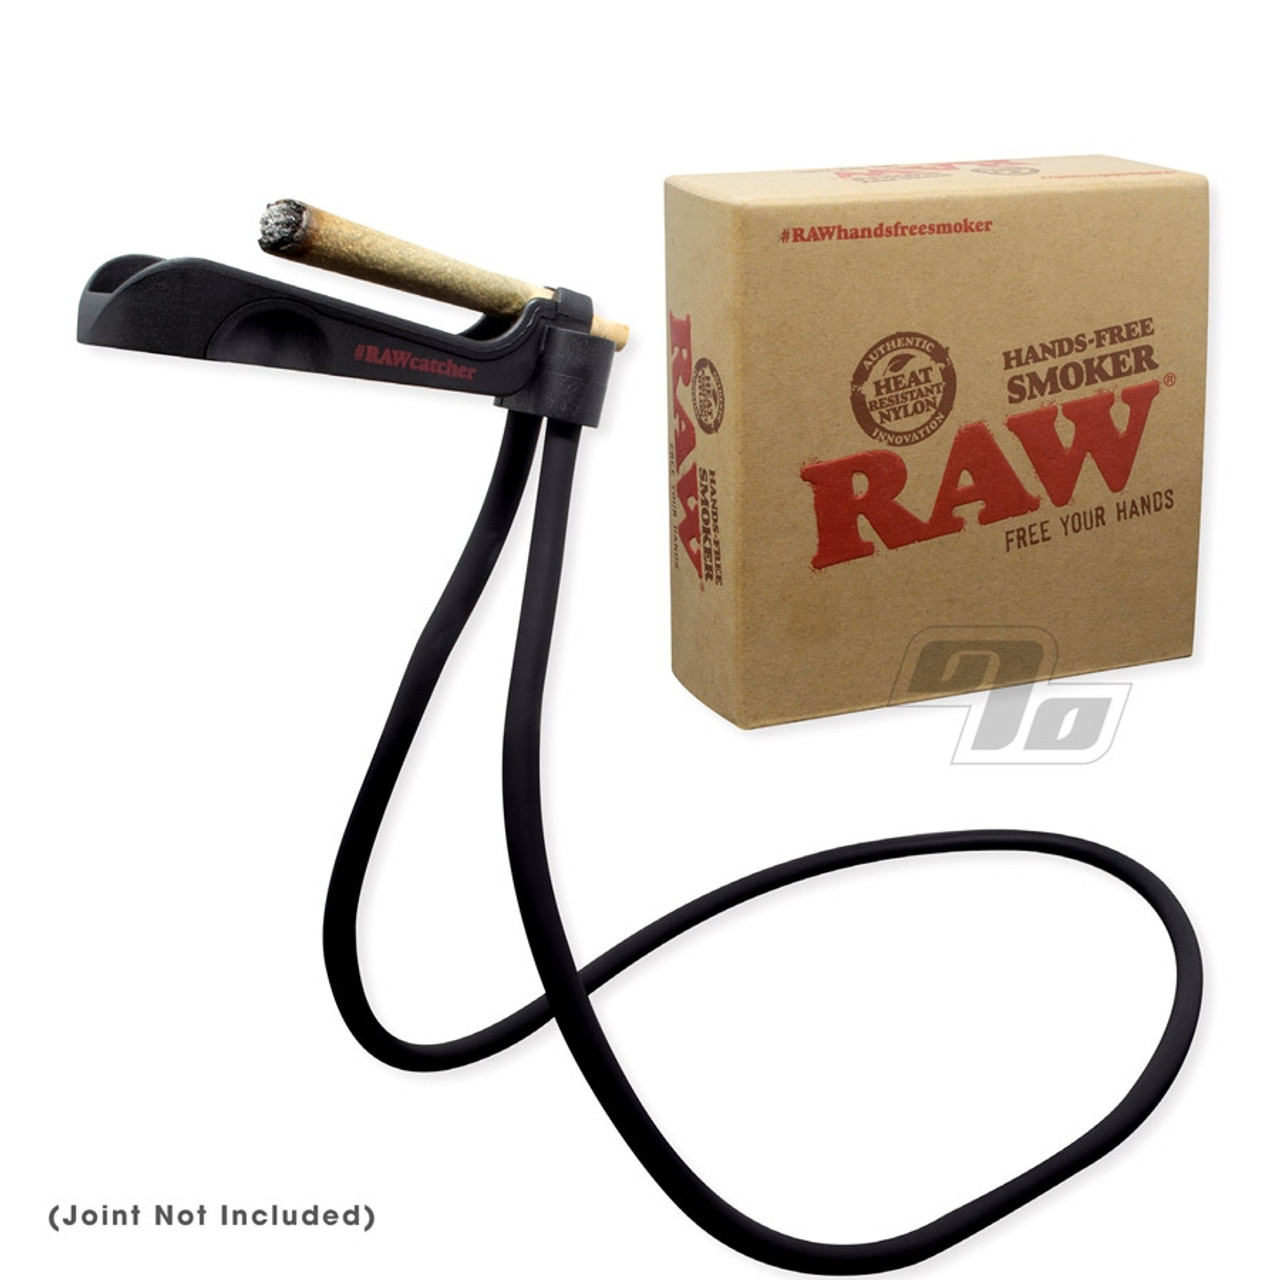 Raw hands free smoker – Trus420